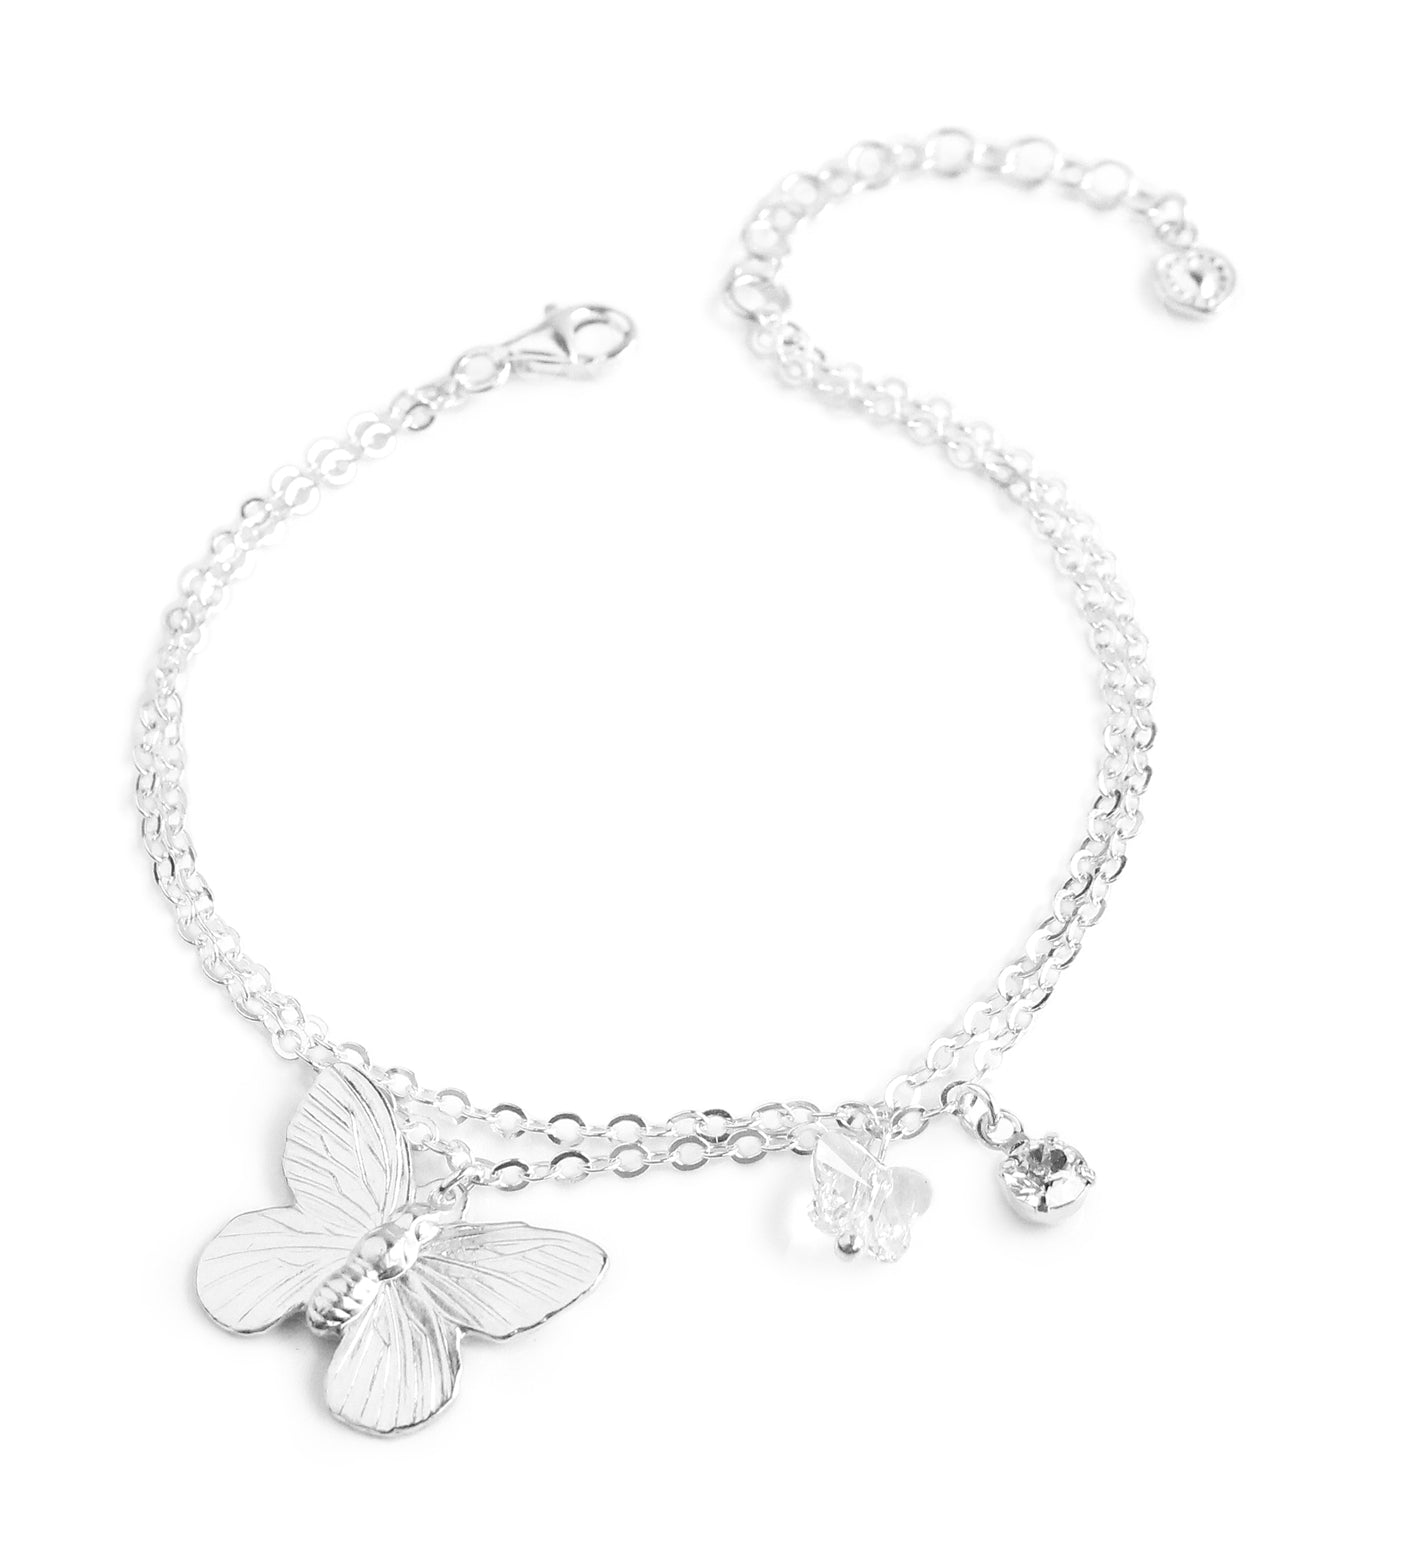 MONGAS Butterfly Bracelets for Women Sterling Silver Purple Butterfly Wrist  Bracelet Jewelry Gifts for Women - Amazon.com